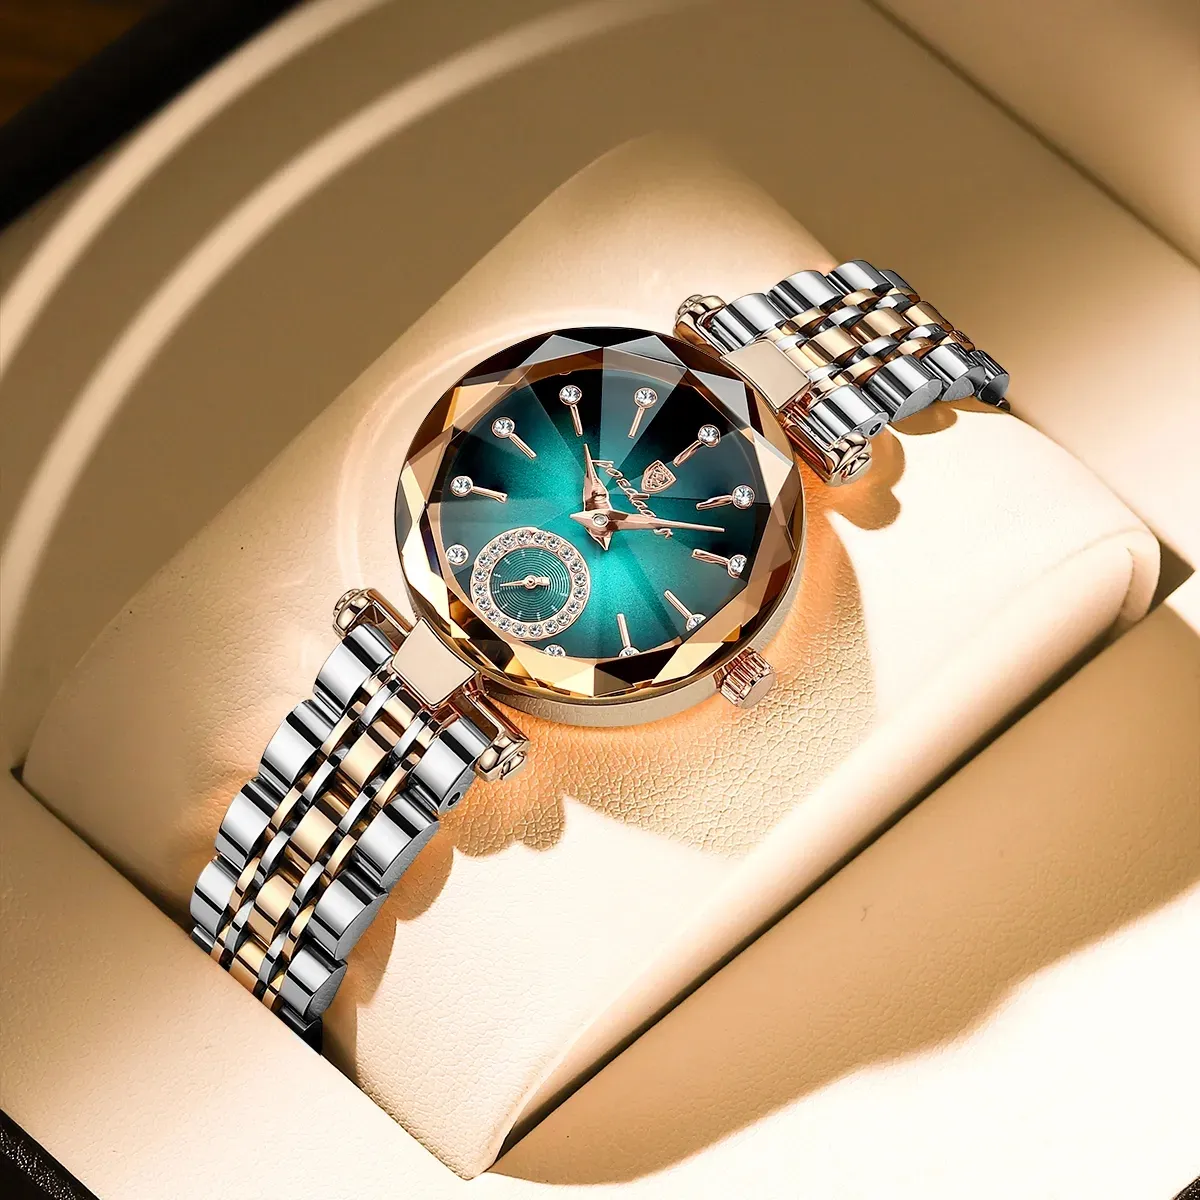 Poedagar 719 Reloj Mujer Women's Watch Quartz Leather Strap Starry Dial Luxury Diamond Watches For Women Fashion Lady Wristwatch